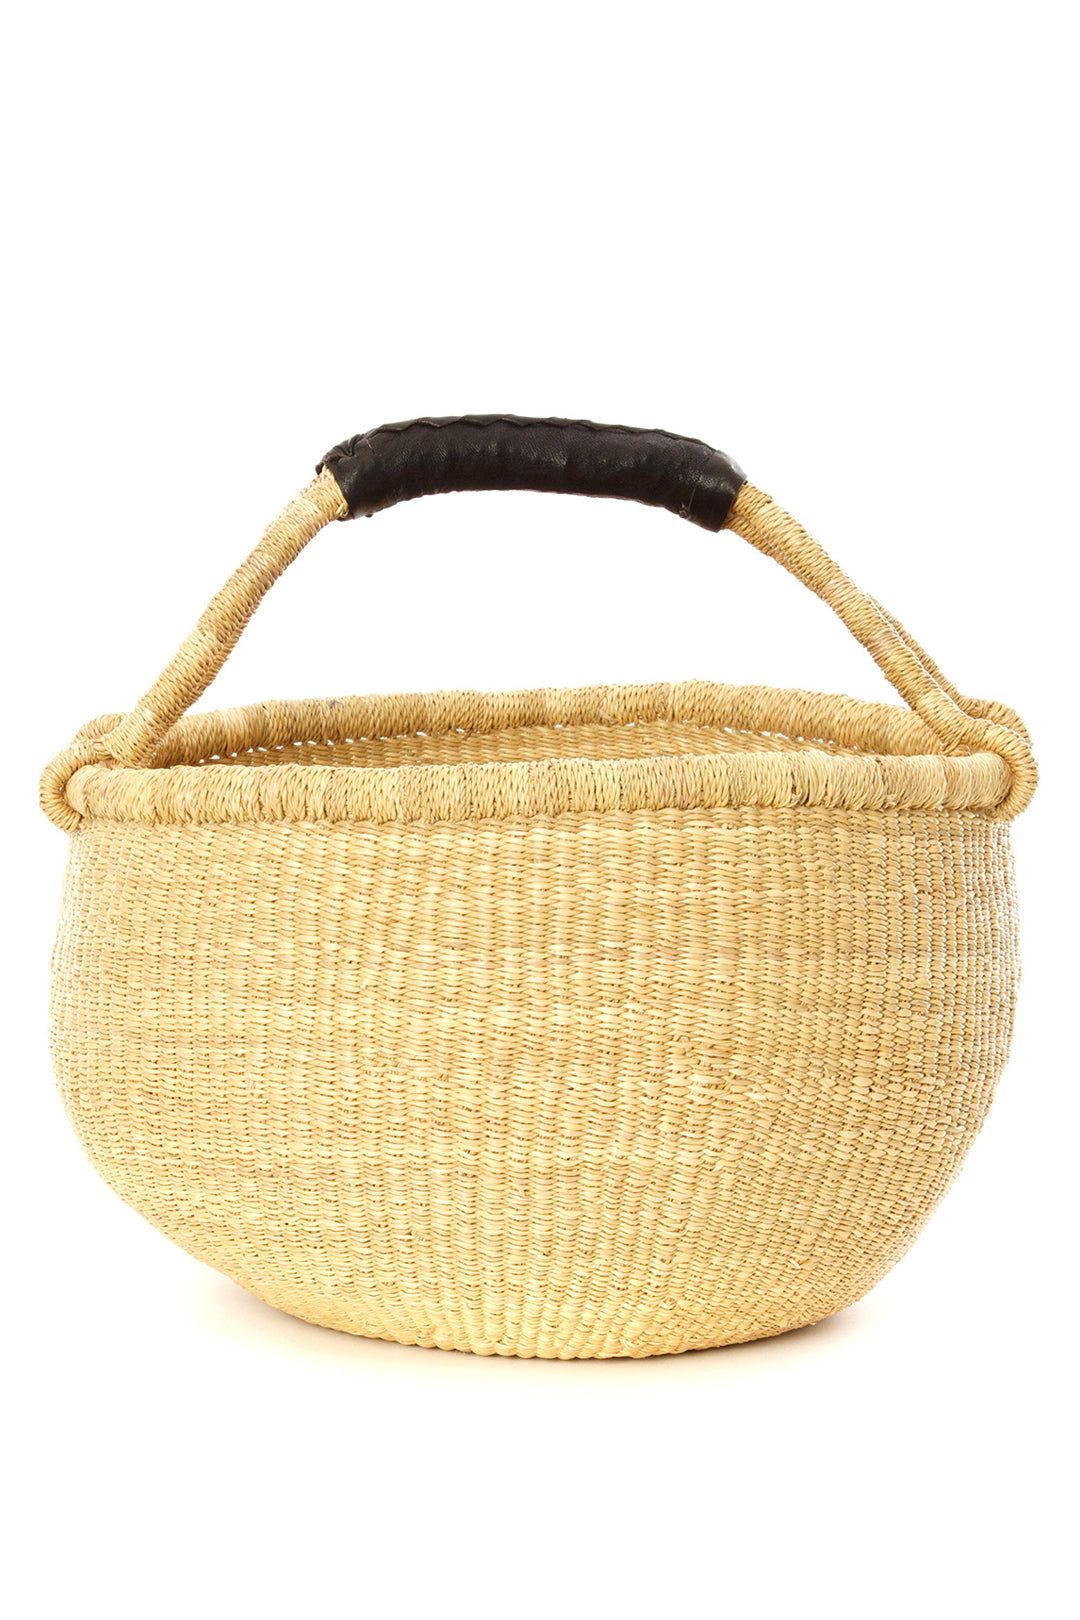 Black Leather Handled Natural Bolga Basket